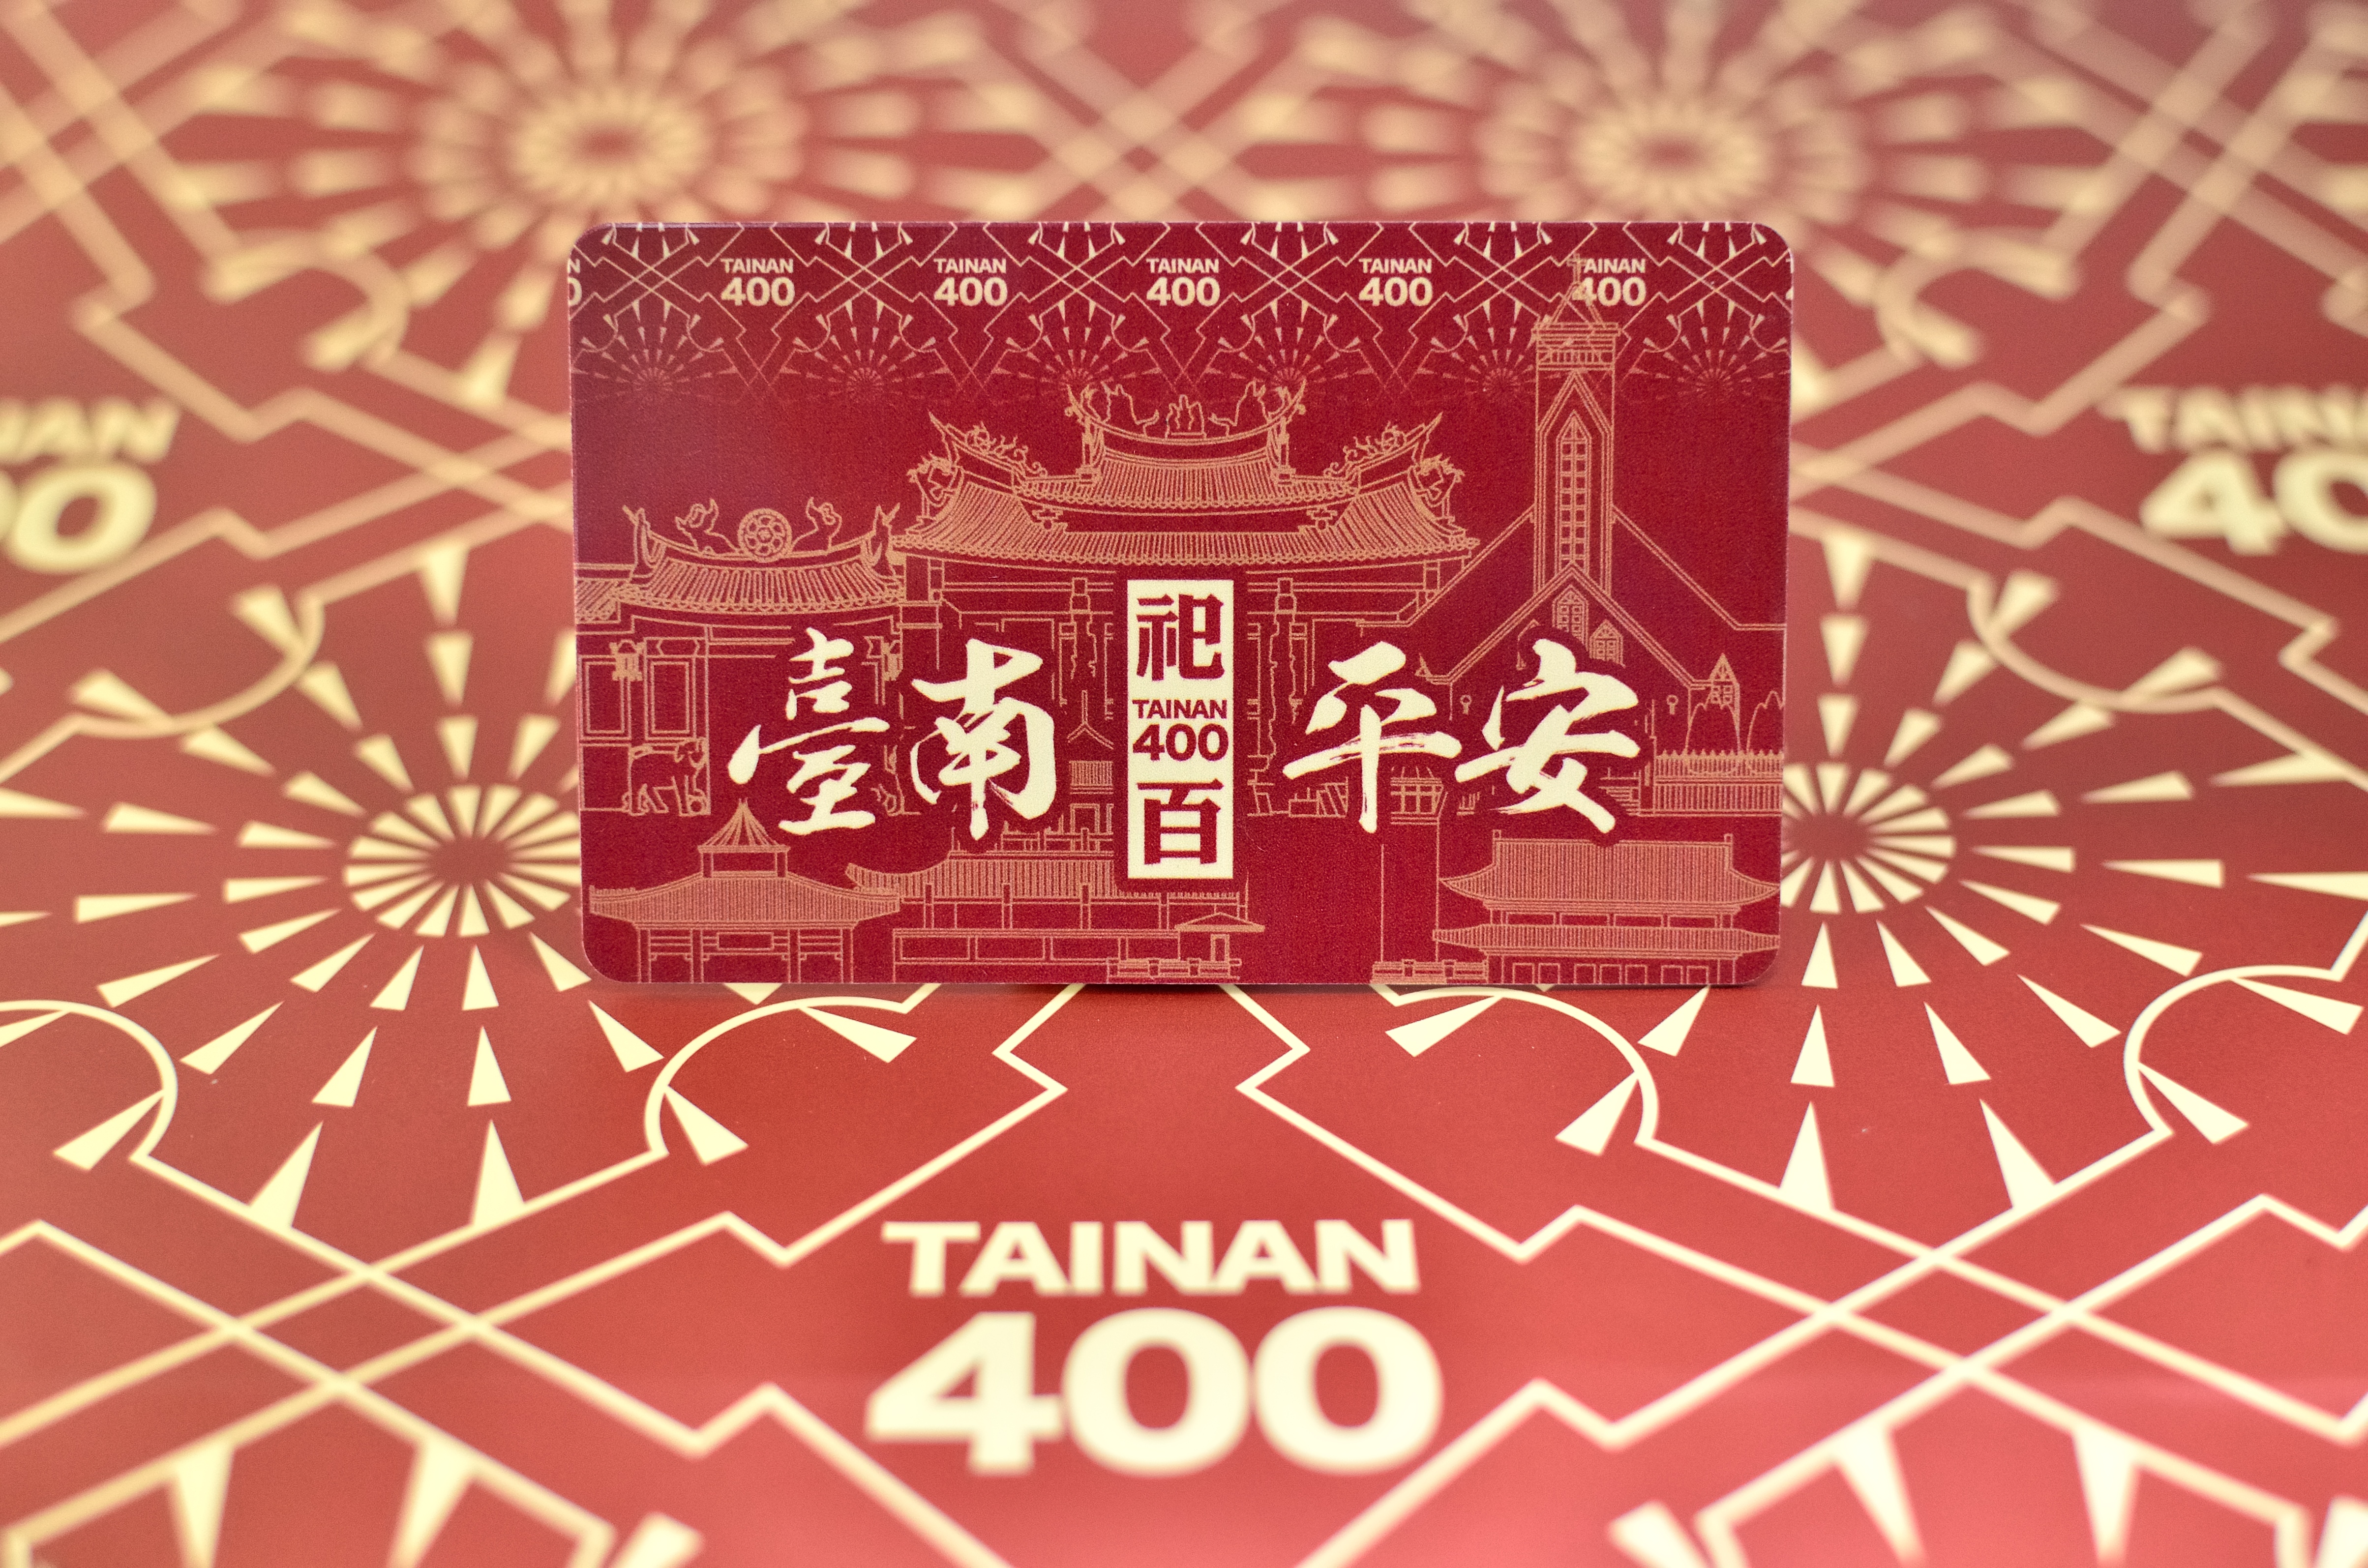 臺南400一般卡紅款